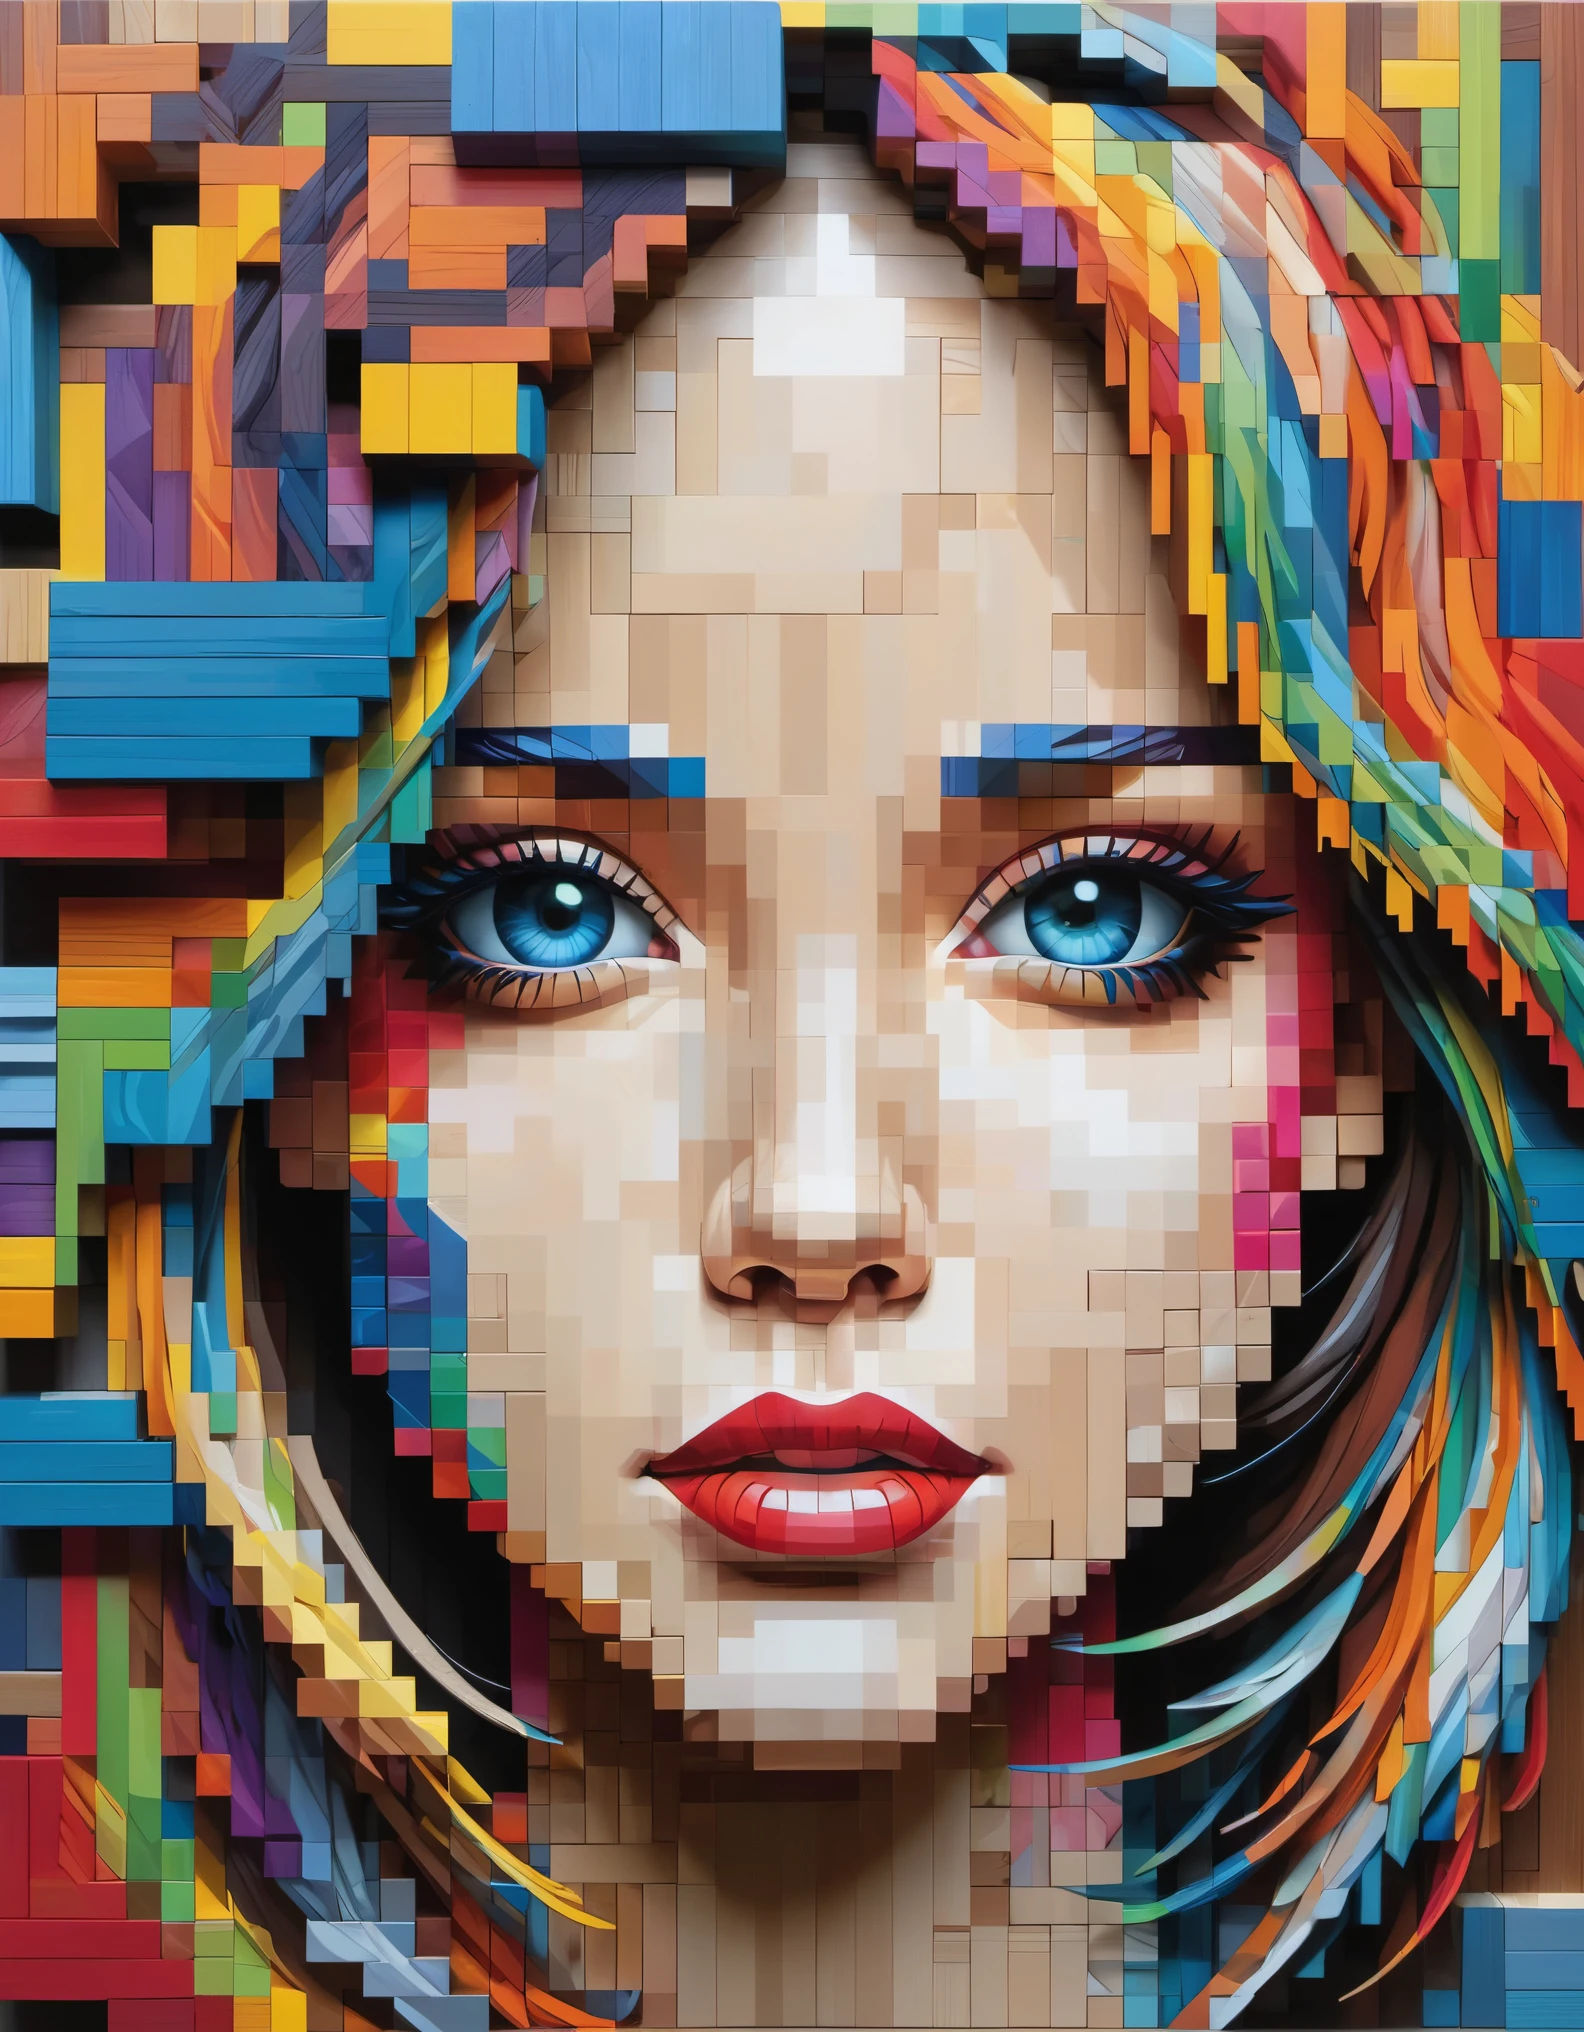 arte de pixel，O artista australiano Gil Bruvel usa blocos de madeira coloridos para criar retratos tridimensionais pixelados de meninas